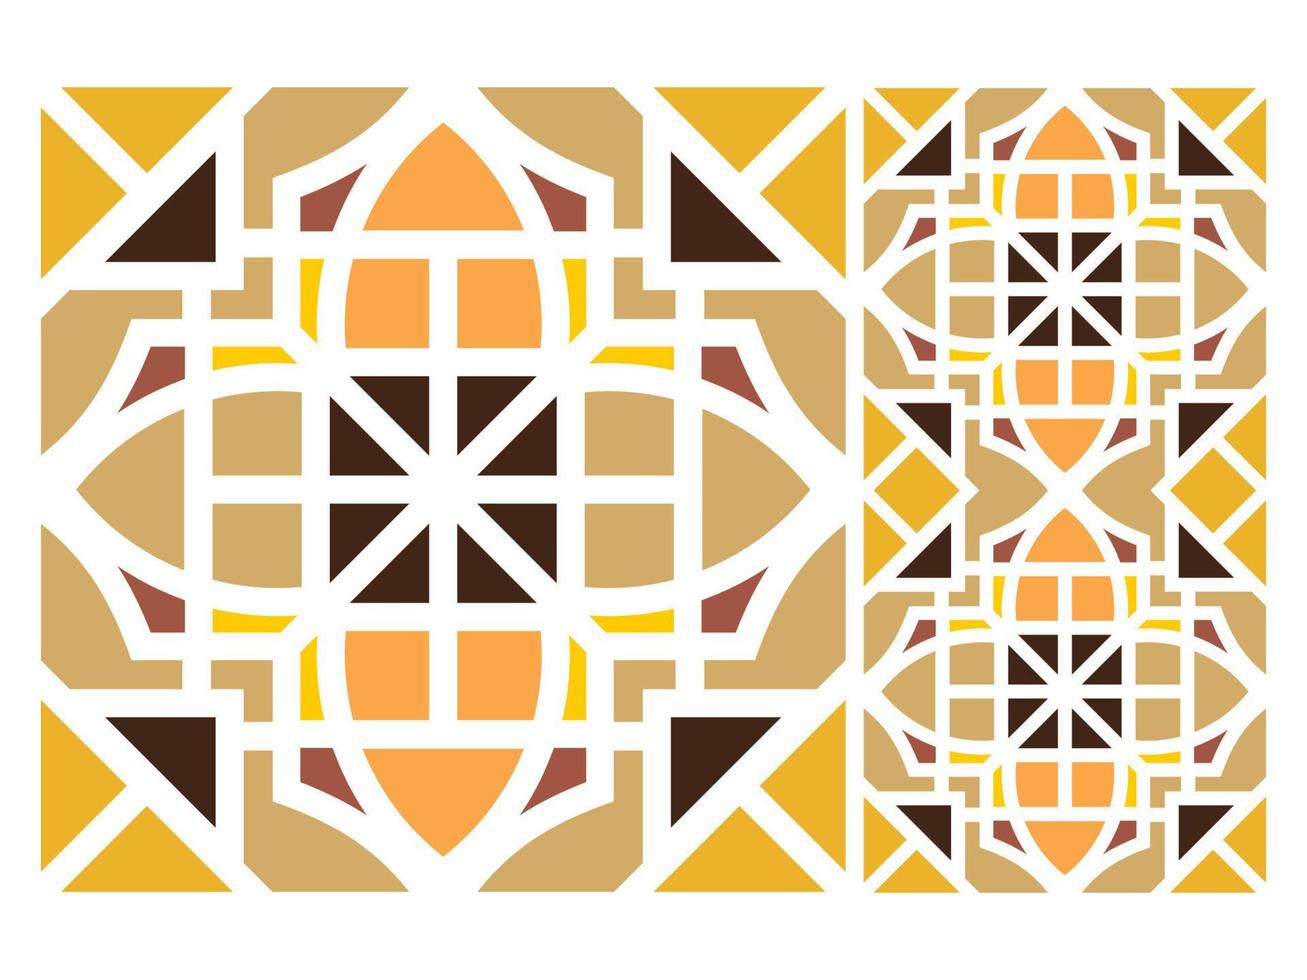 vetor de mosaico de azulejos de design de padrão sem costura grátis